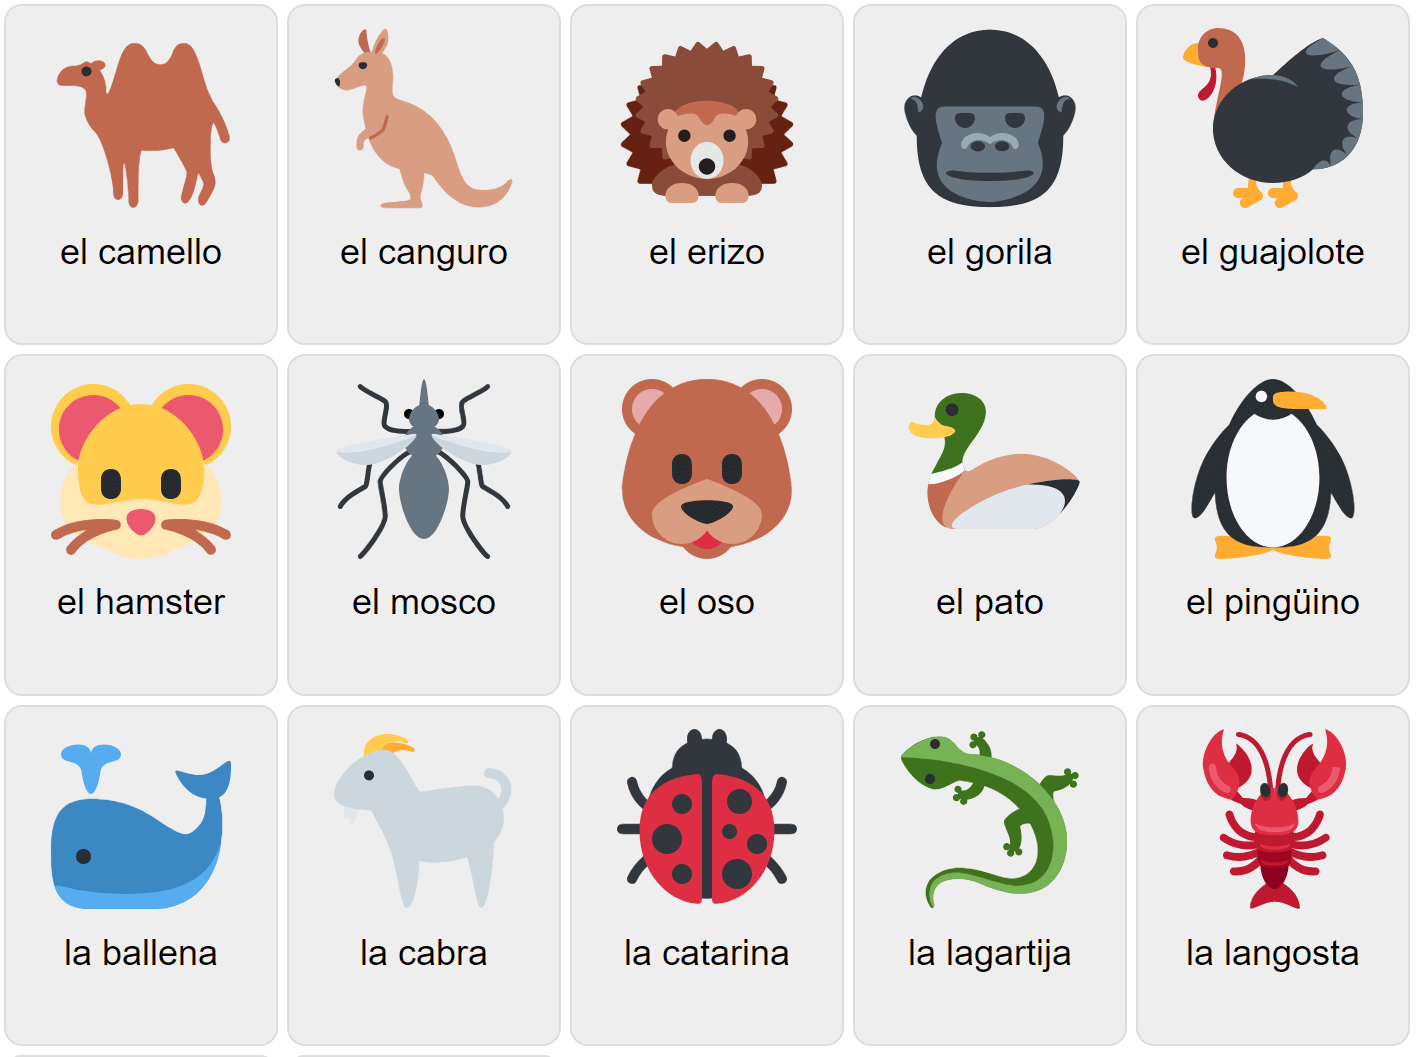 Djur på spanska 2